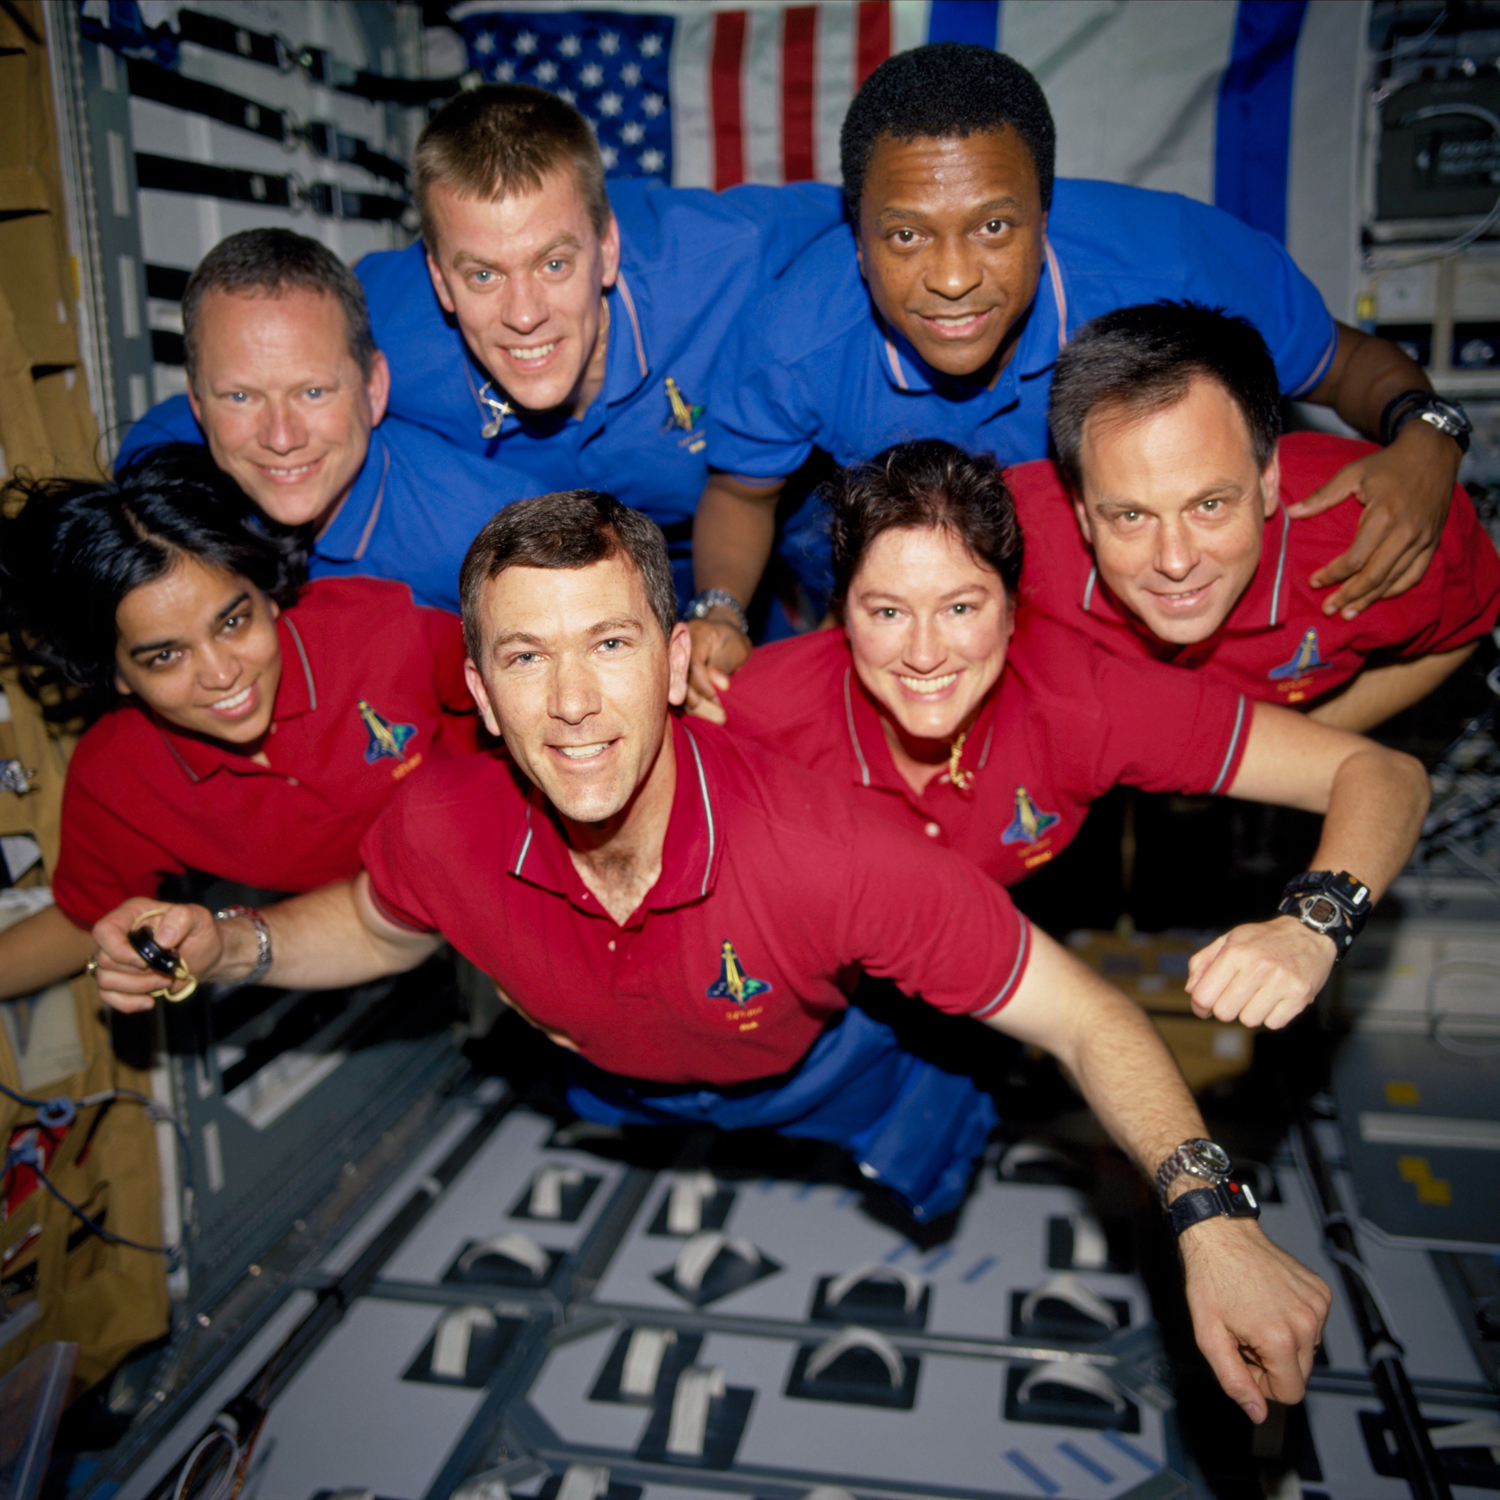 กลุ่มนักบินอวกาศว่ายน้ำด้วยกันในแขนเสื้อ